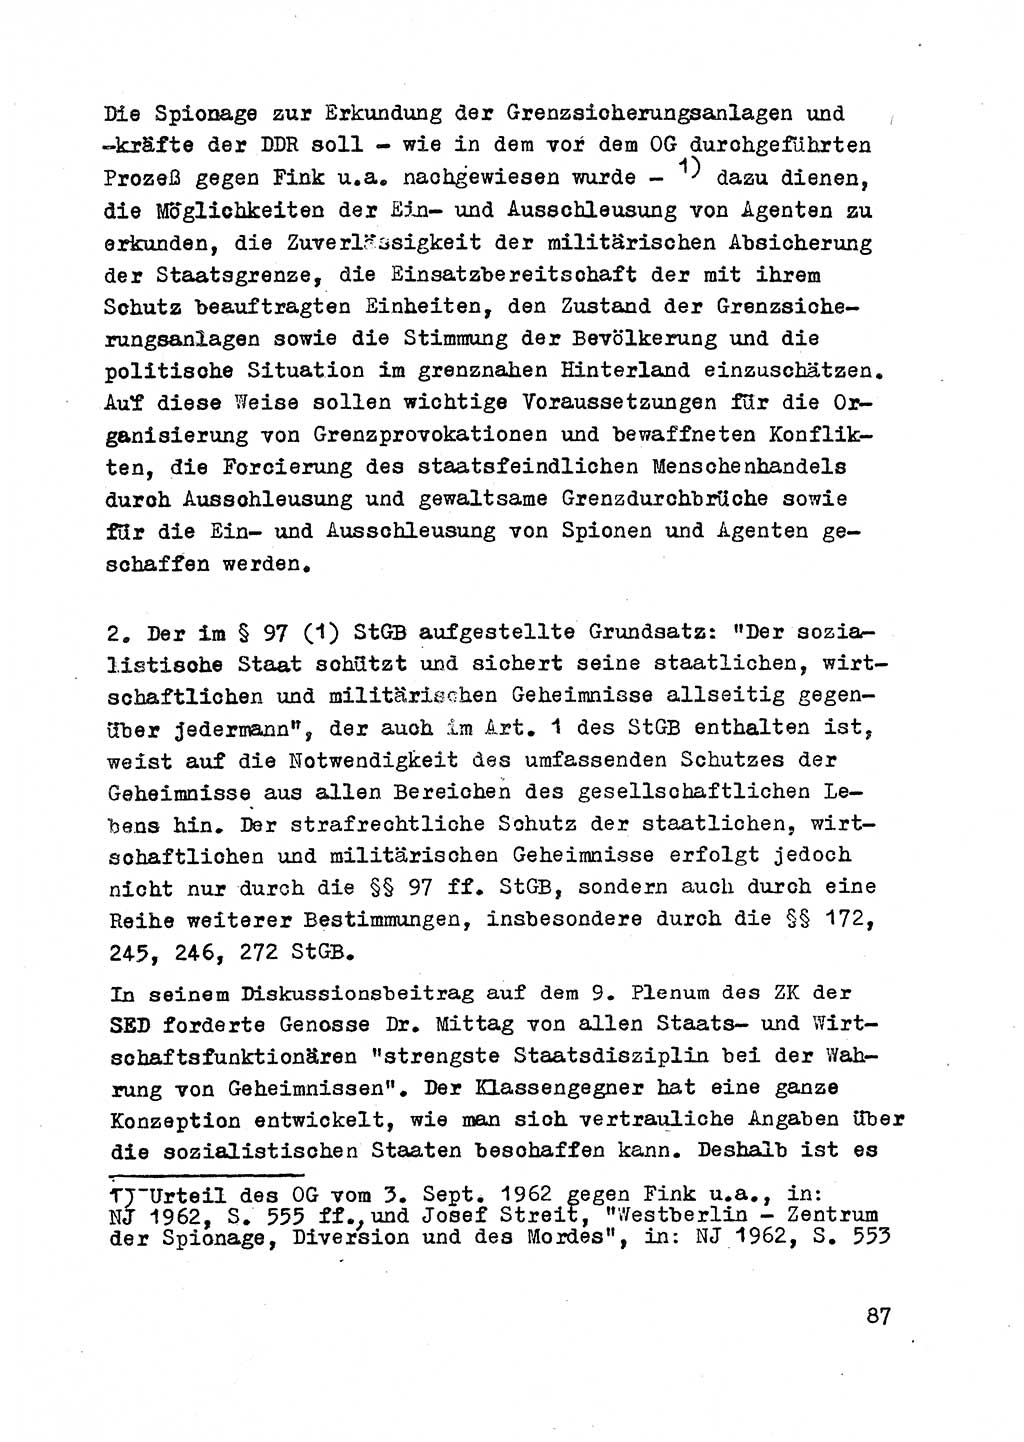 Strafrecht der DDR (Deutsche Demokratische Republik), Besonderer Teil, Lehrmaterial, Heft 2 1969, Seite 87 (Strafr. DDR BT Lehrmat. H. 2 1969, S. 87)